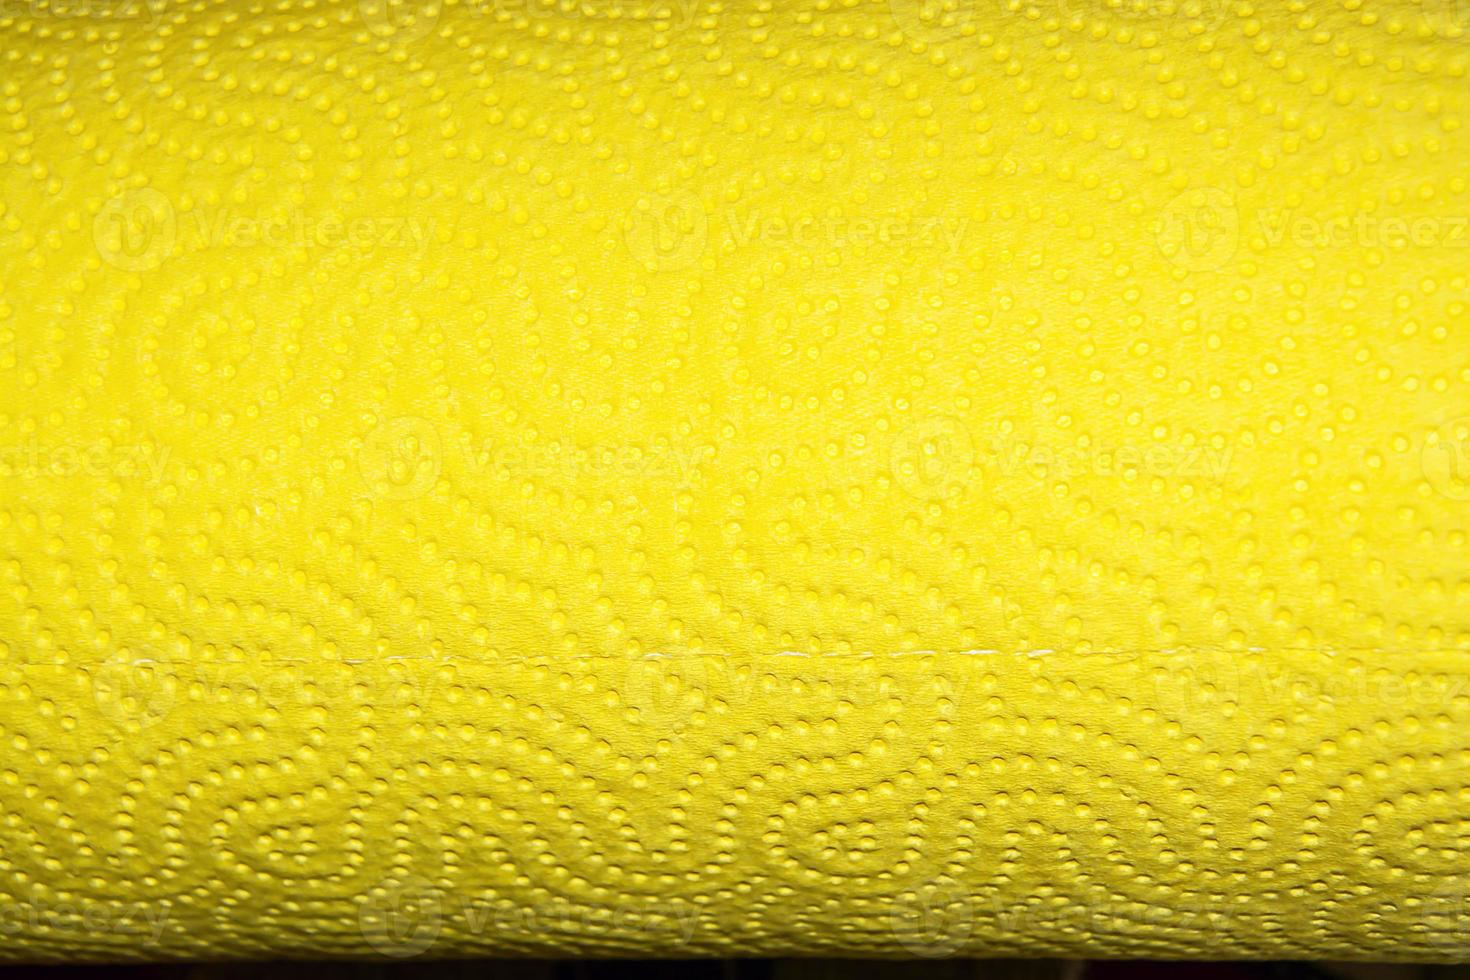 abstrakt bakgrundsstruktur av perforerat papper i gul färg. kopieringsutrymme. foto